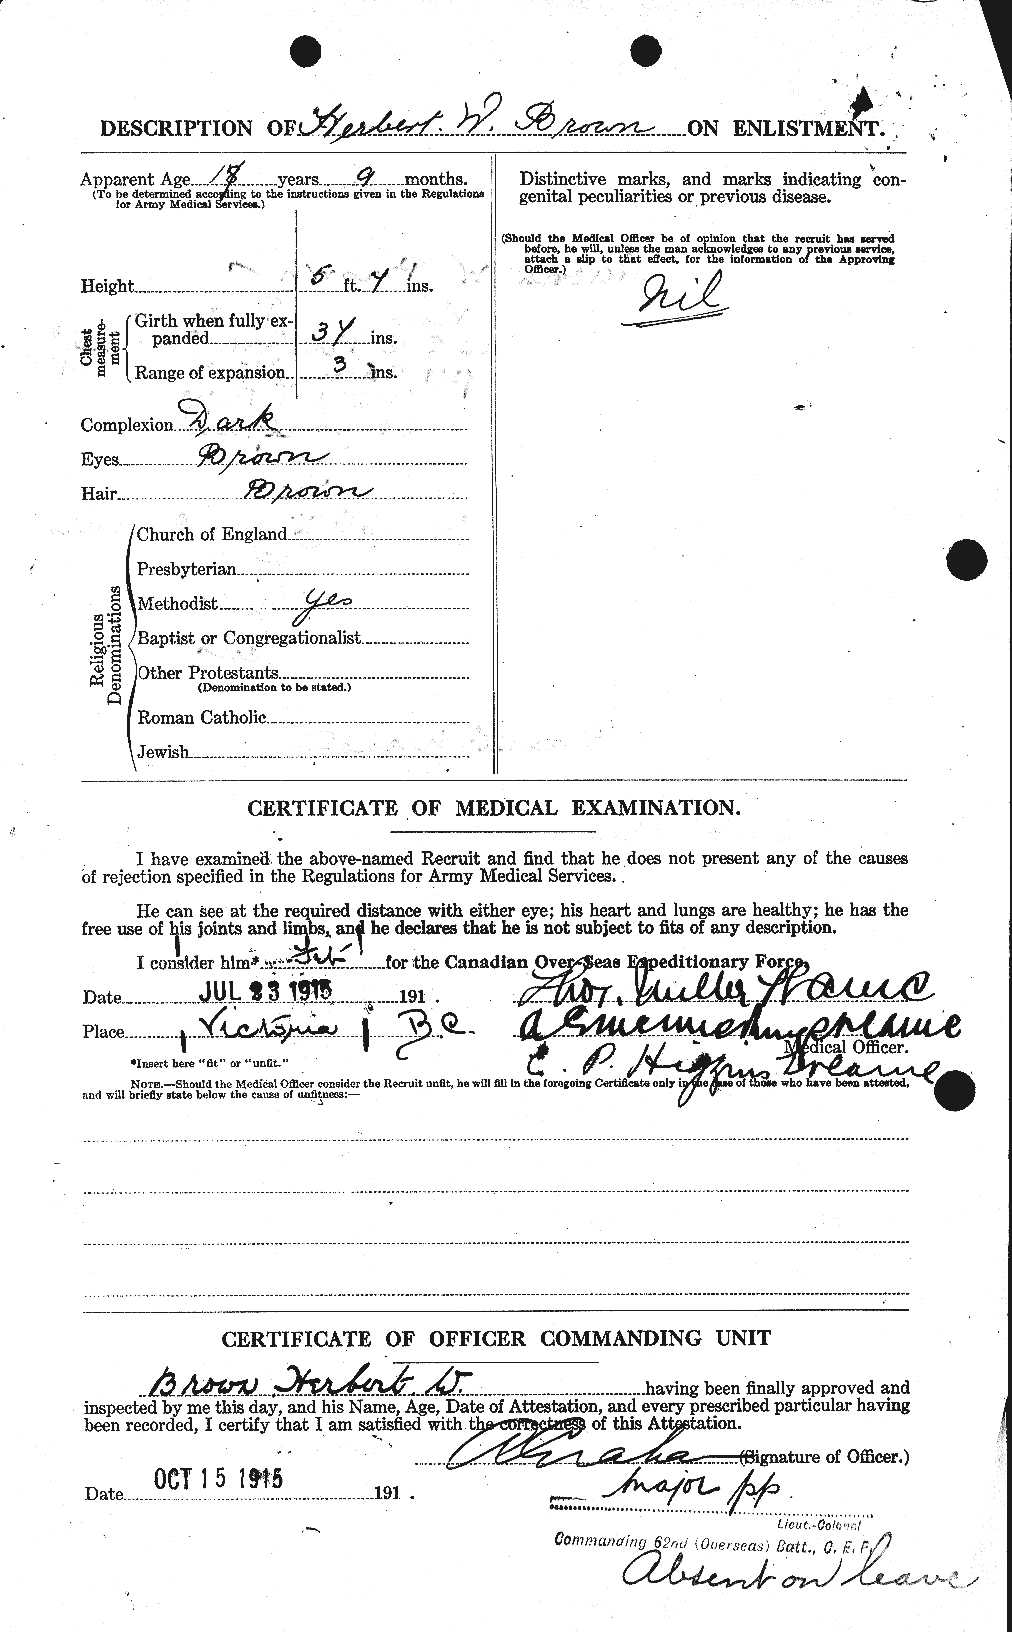 Dossiers du Personnel de la Première Guerre mondiale - CEC 265591b